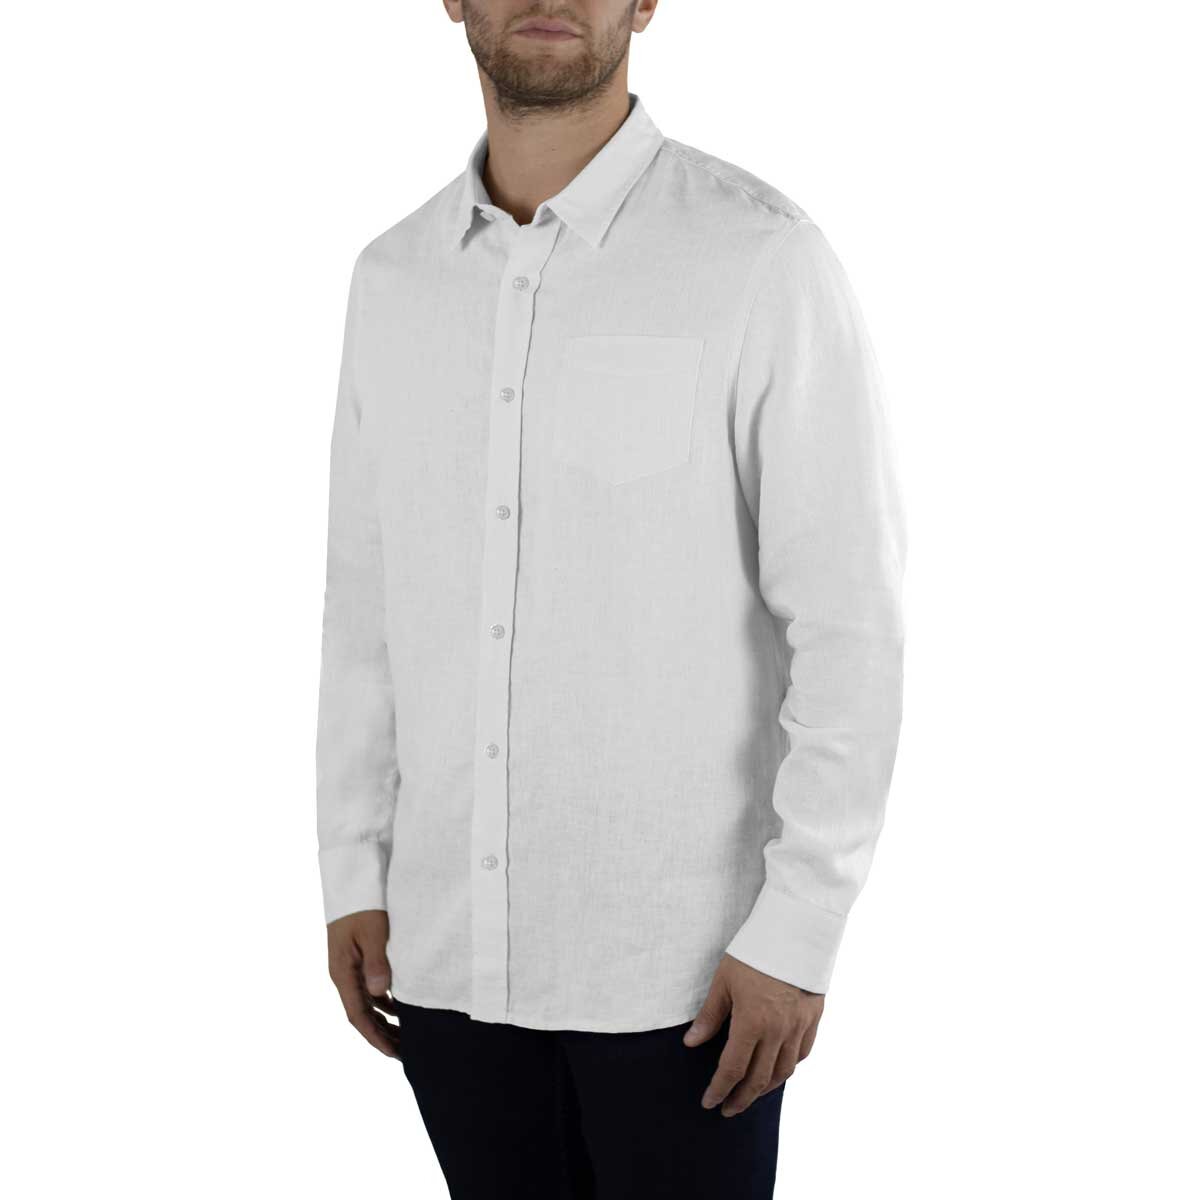 Jachs Men's Linen Long Sleeve Shirt in White